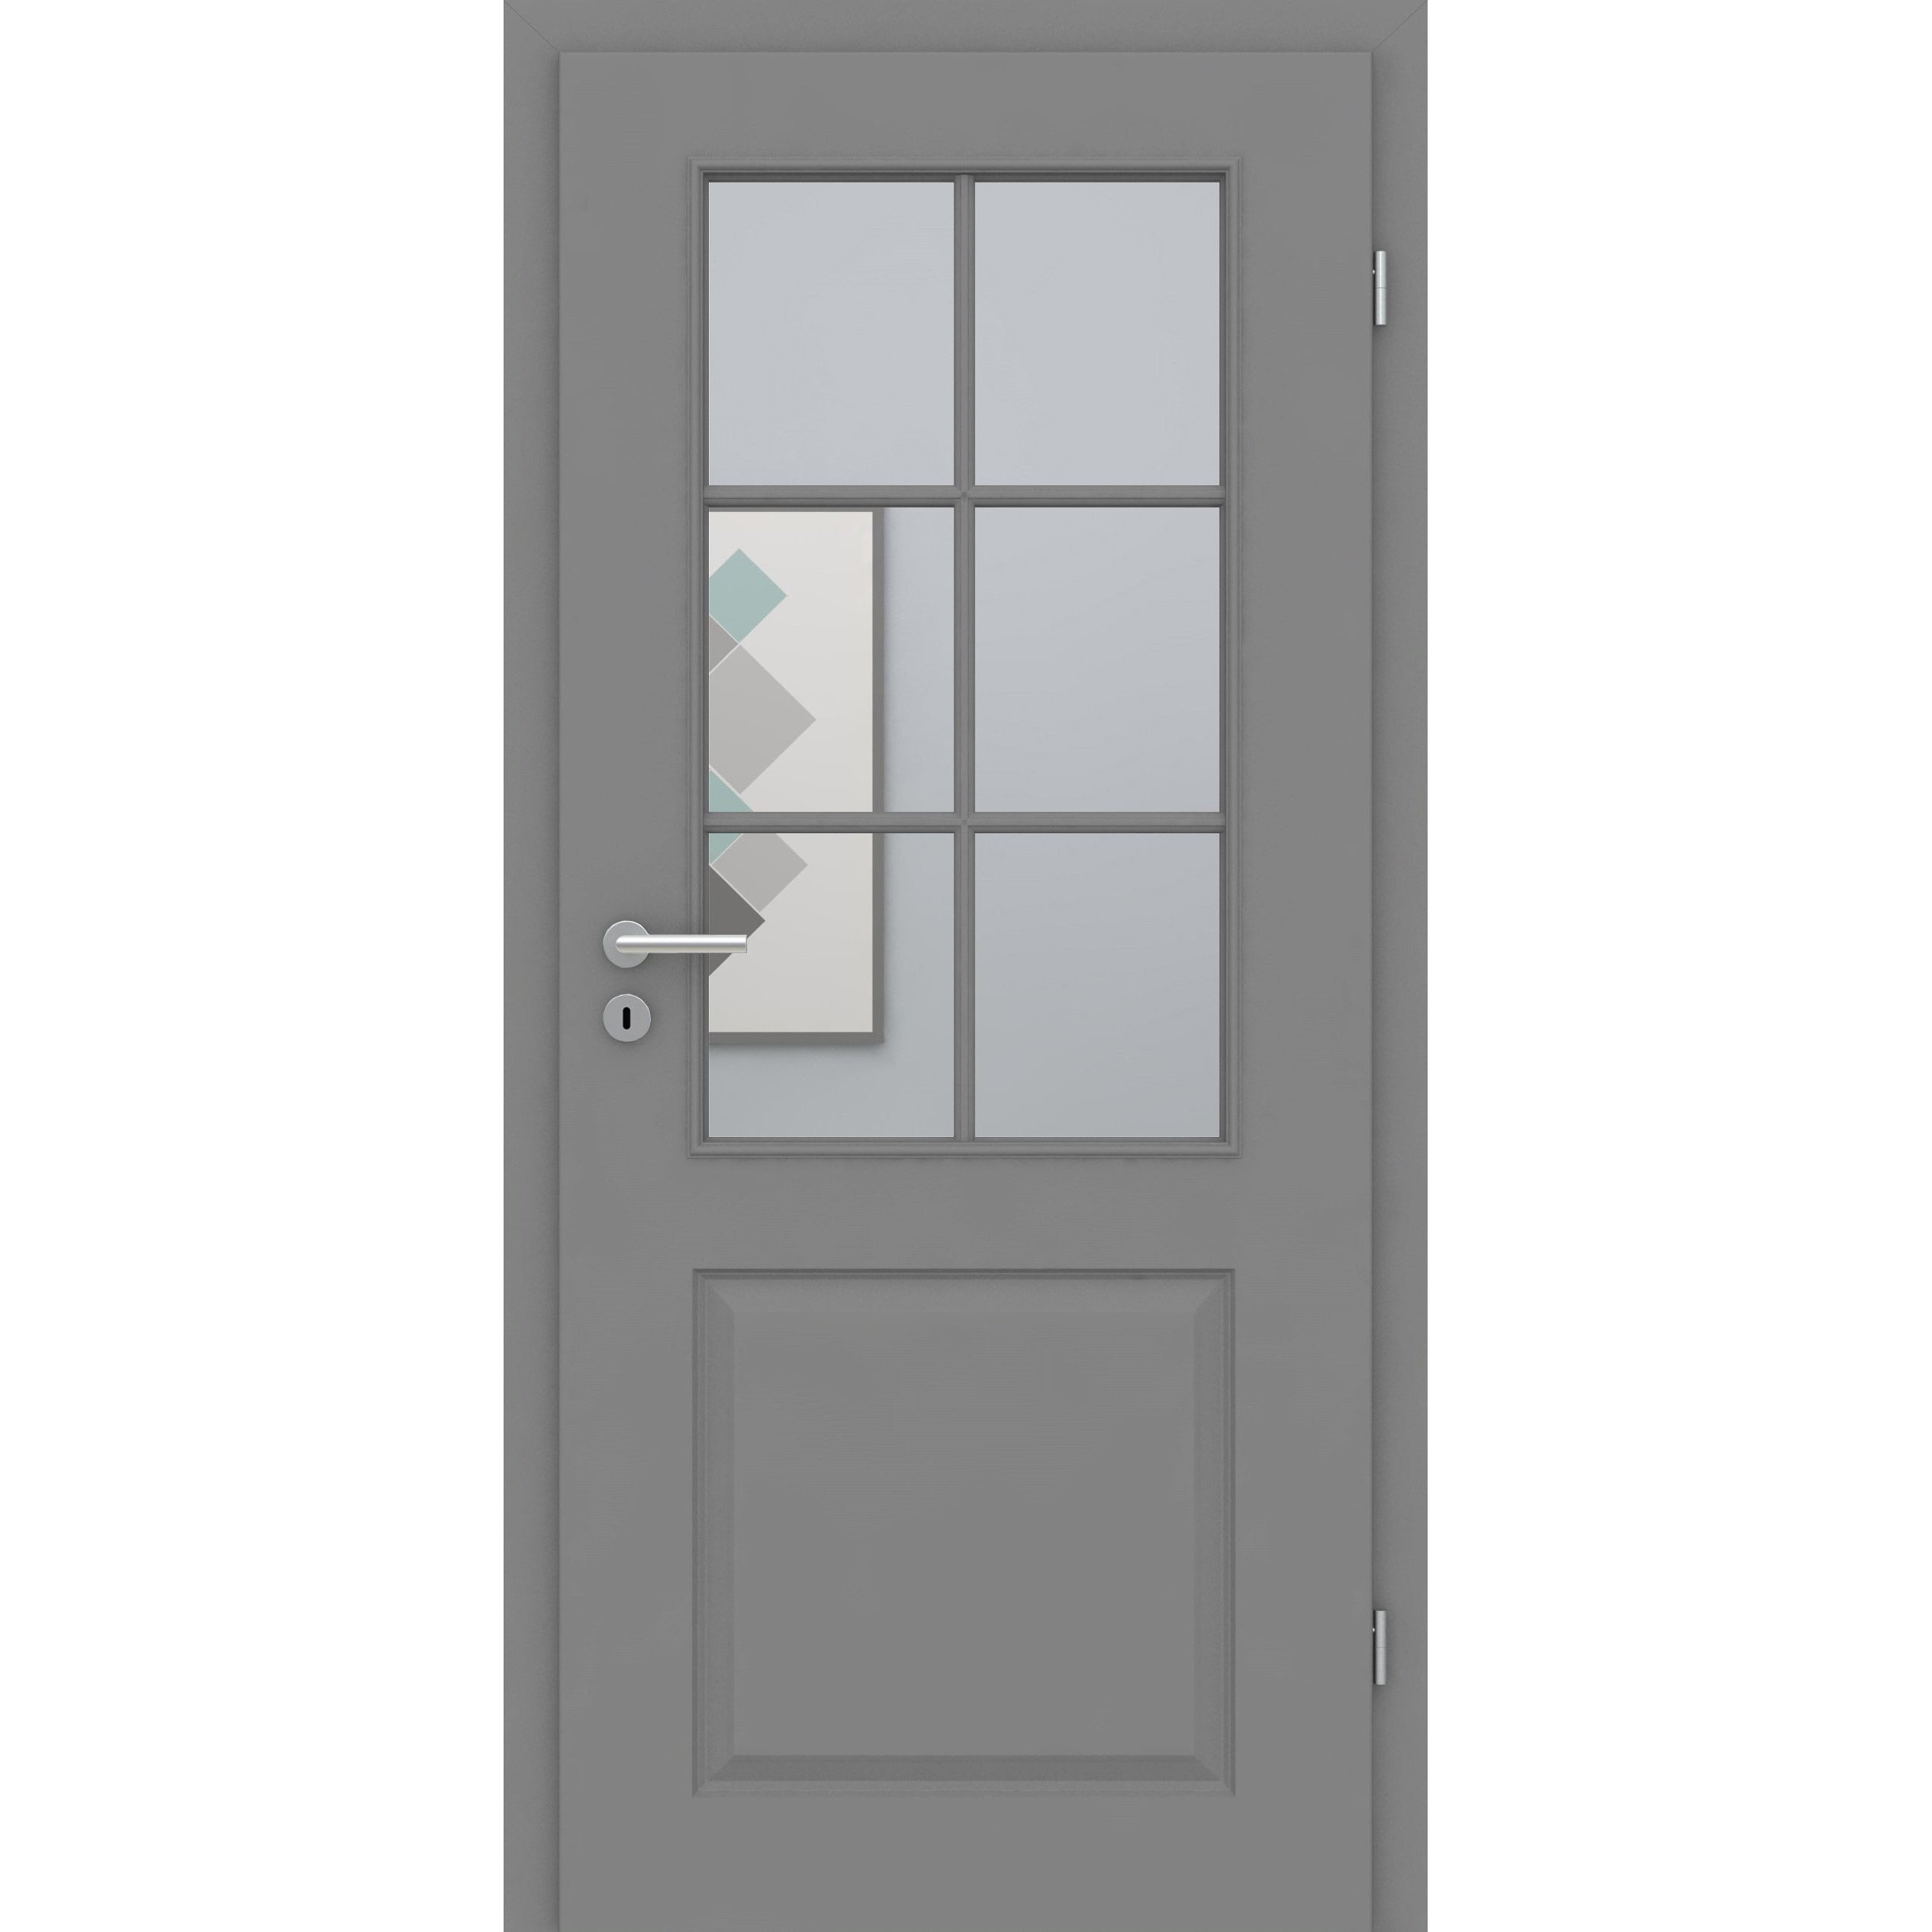 Zimmertür mit Lichtausschnitt mit Sprossenrahmen standard grau 2 Kassetten Designkante - Modell Stiltür K27LASPS